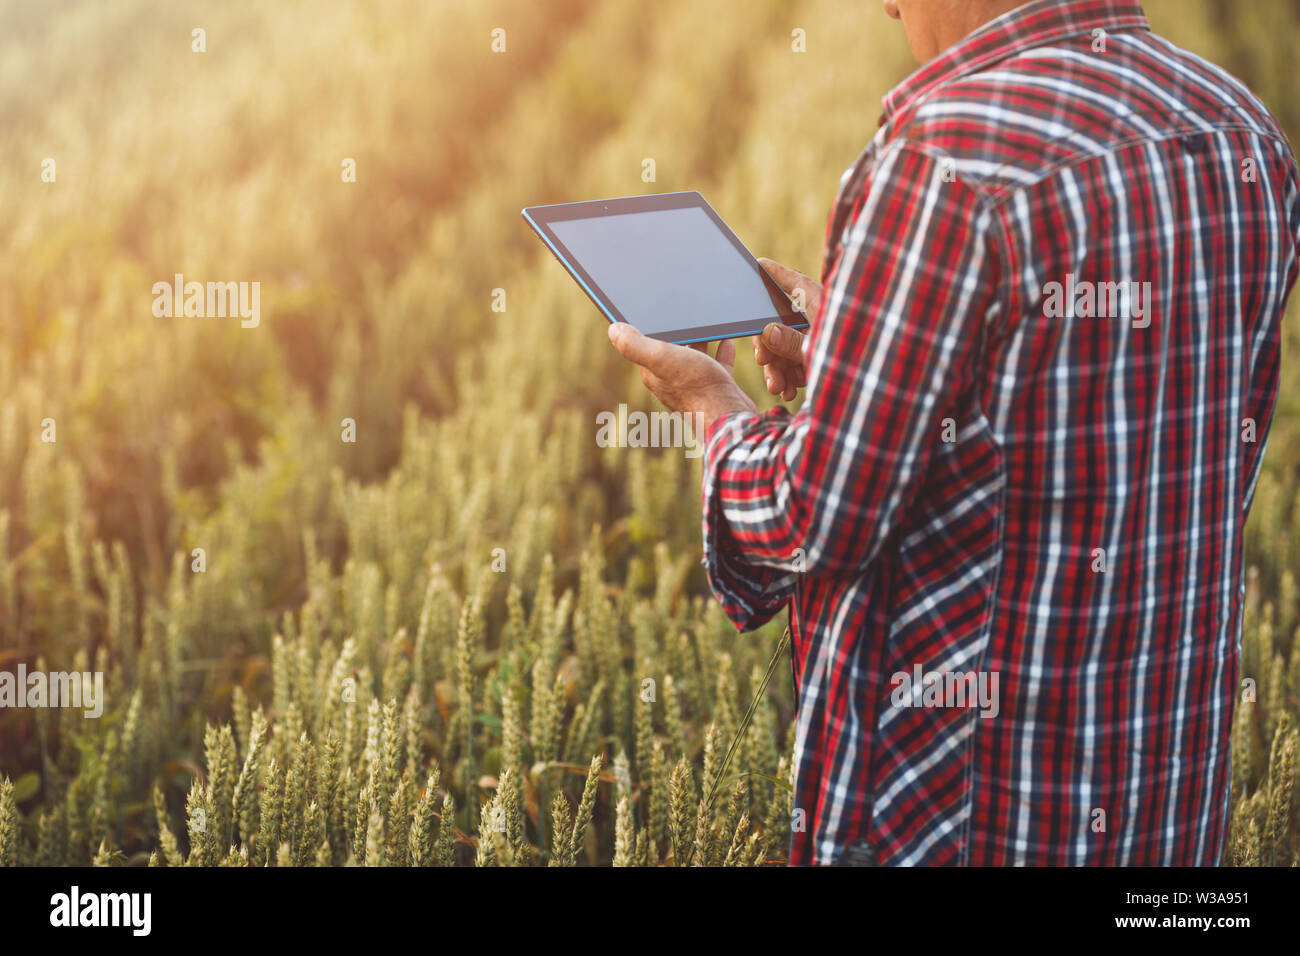 Gli agricoltori le mani con la compressa in un campo di grano vicino. Smart farming, uomo utilizzando moderne tecnologie in agricoltura Foto Stock